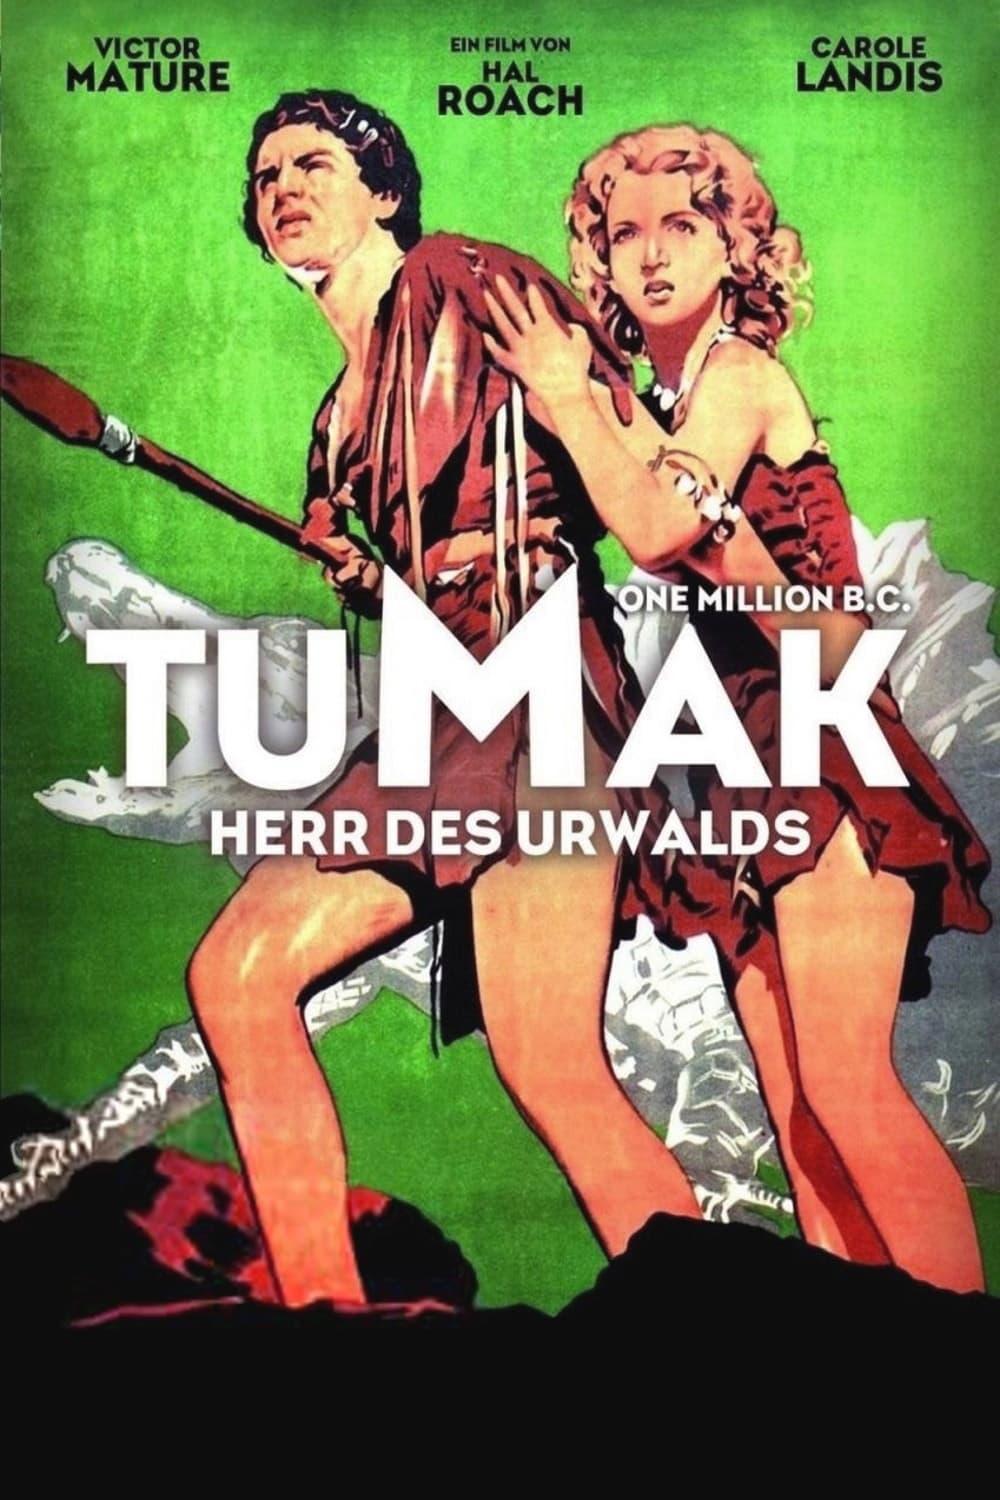 Tumak, der Herr des Urwalds poster